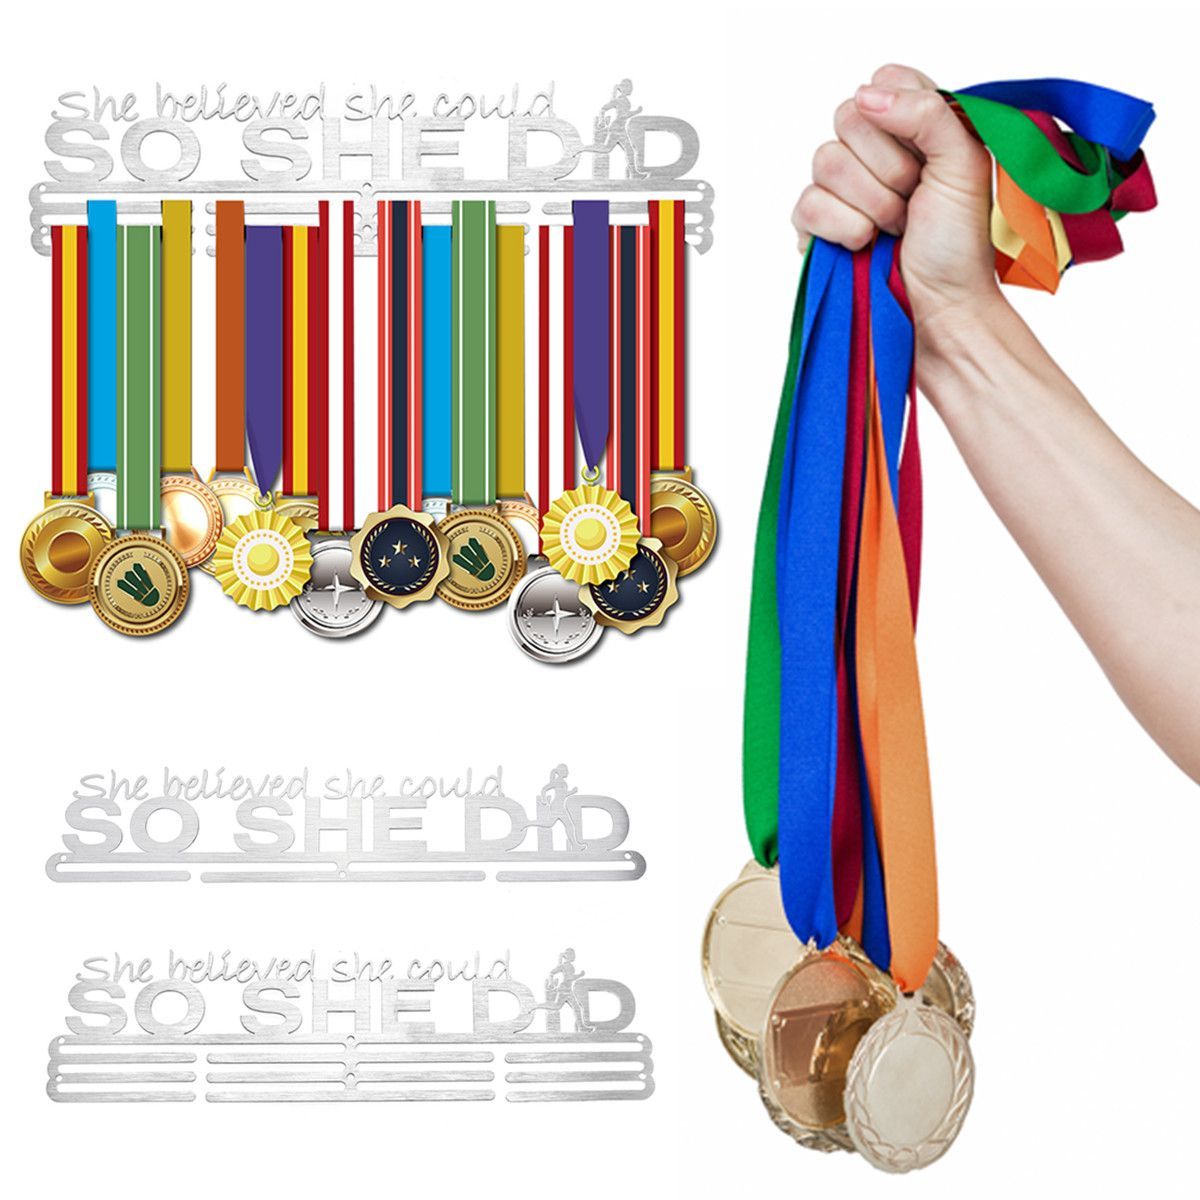 Stainless-Steel-Medal-Holder-Hanger-Display-Rack-For-Sport-Running-Swimming-Decorations-1600222